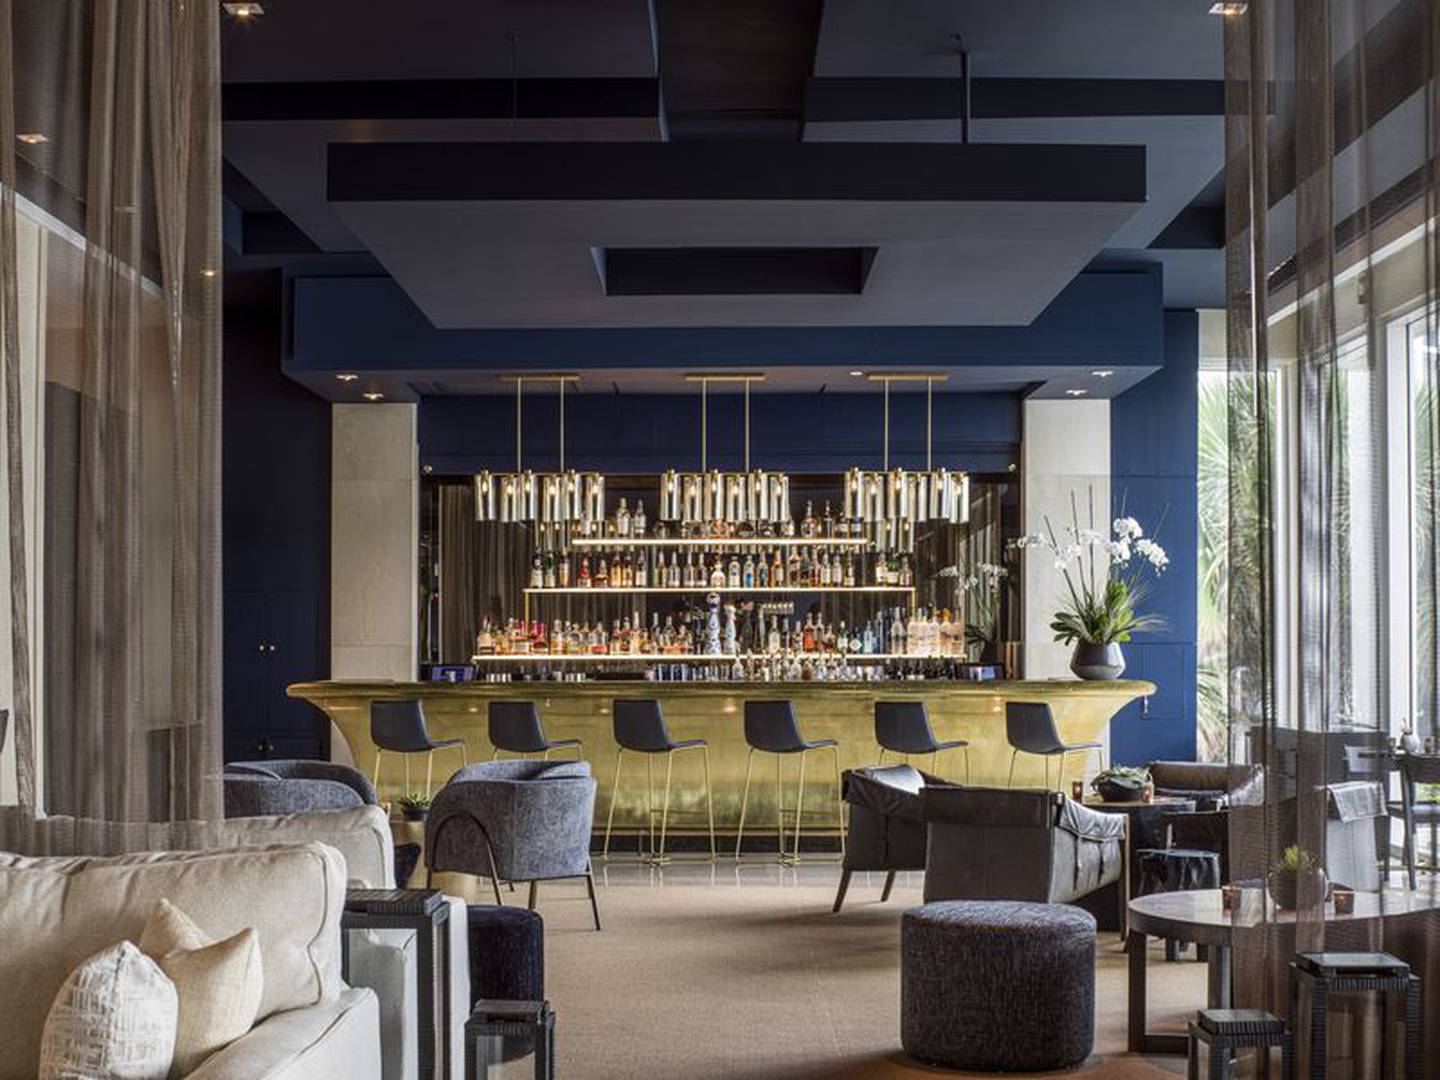 El Lounge es un bar del vestíbulo del Boca Raton Beach Club. Fotógrafo: Thomas Hart Shelby
dfd